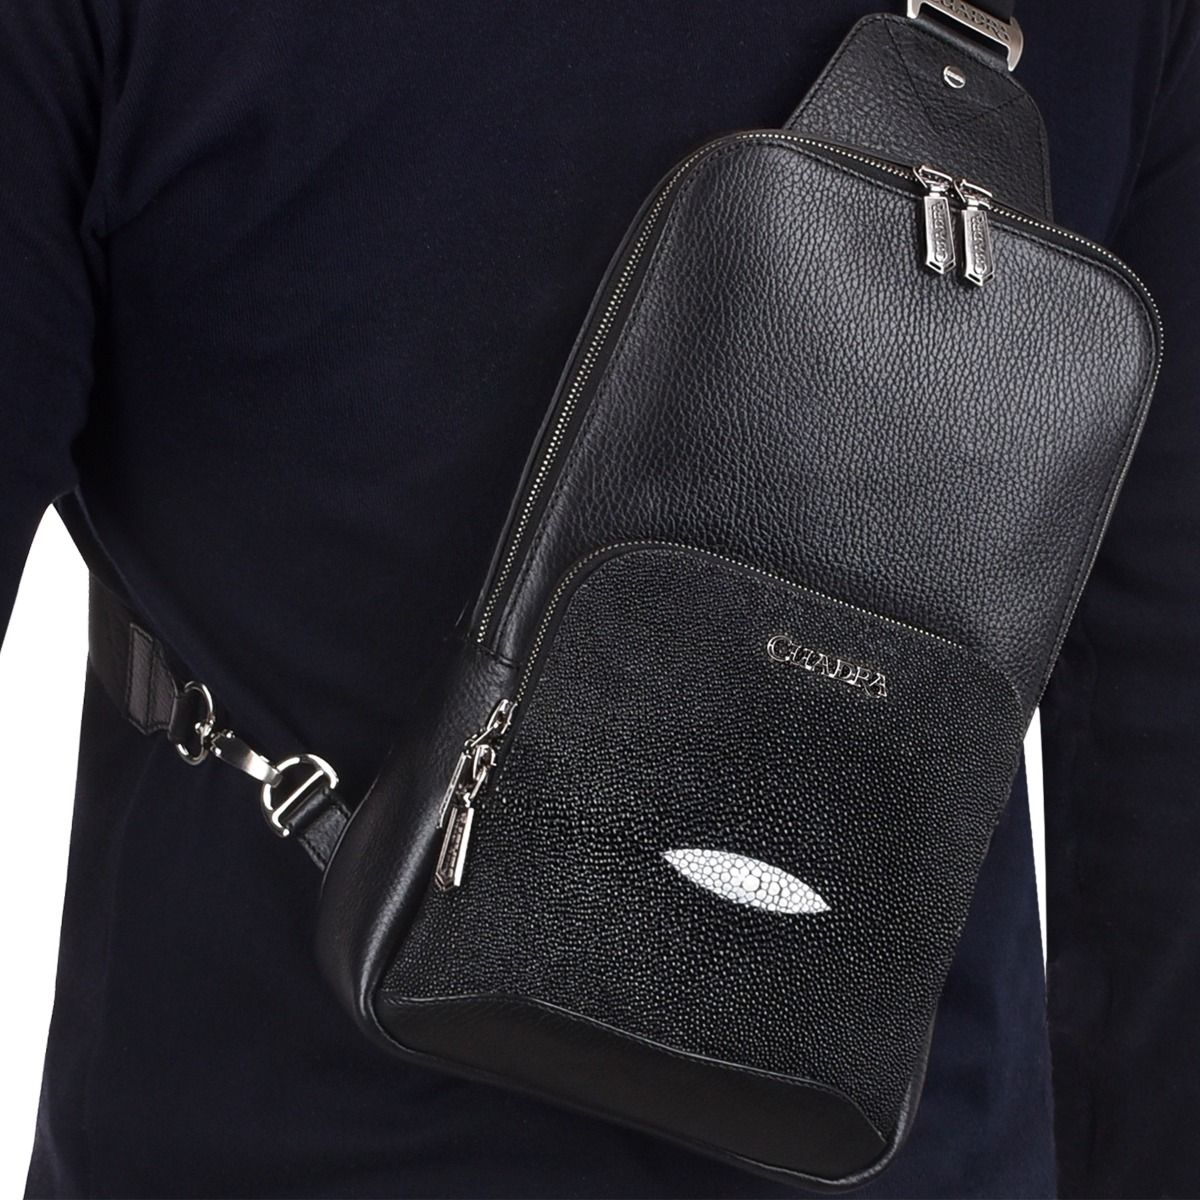 Black leather shoulder bag, Hardware and Cuadra logo in nickel color.